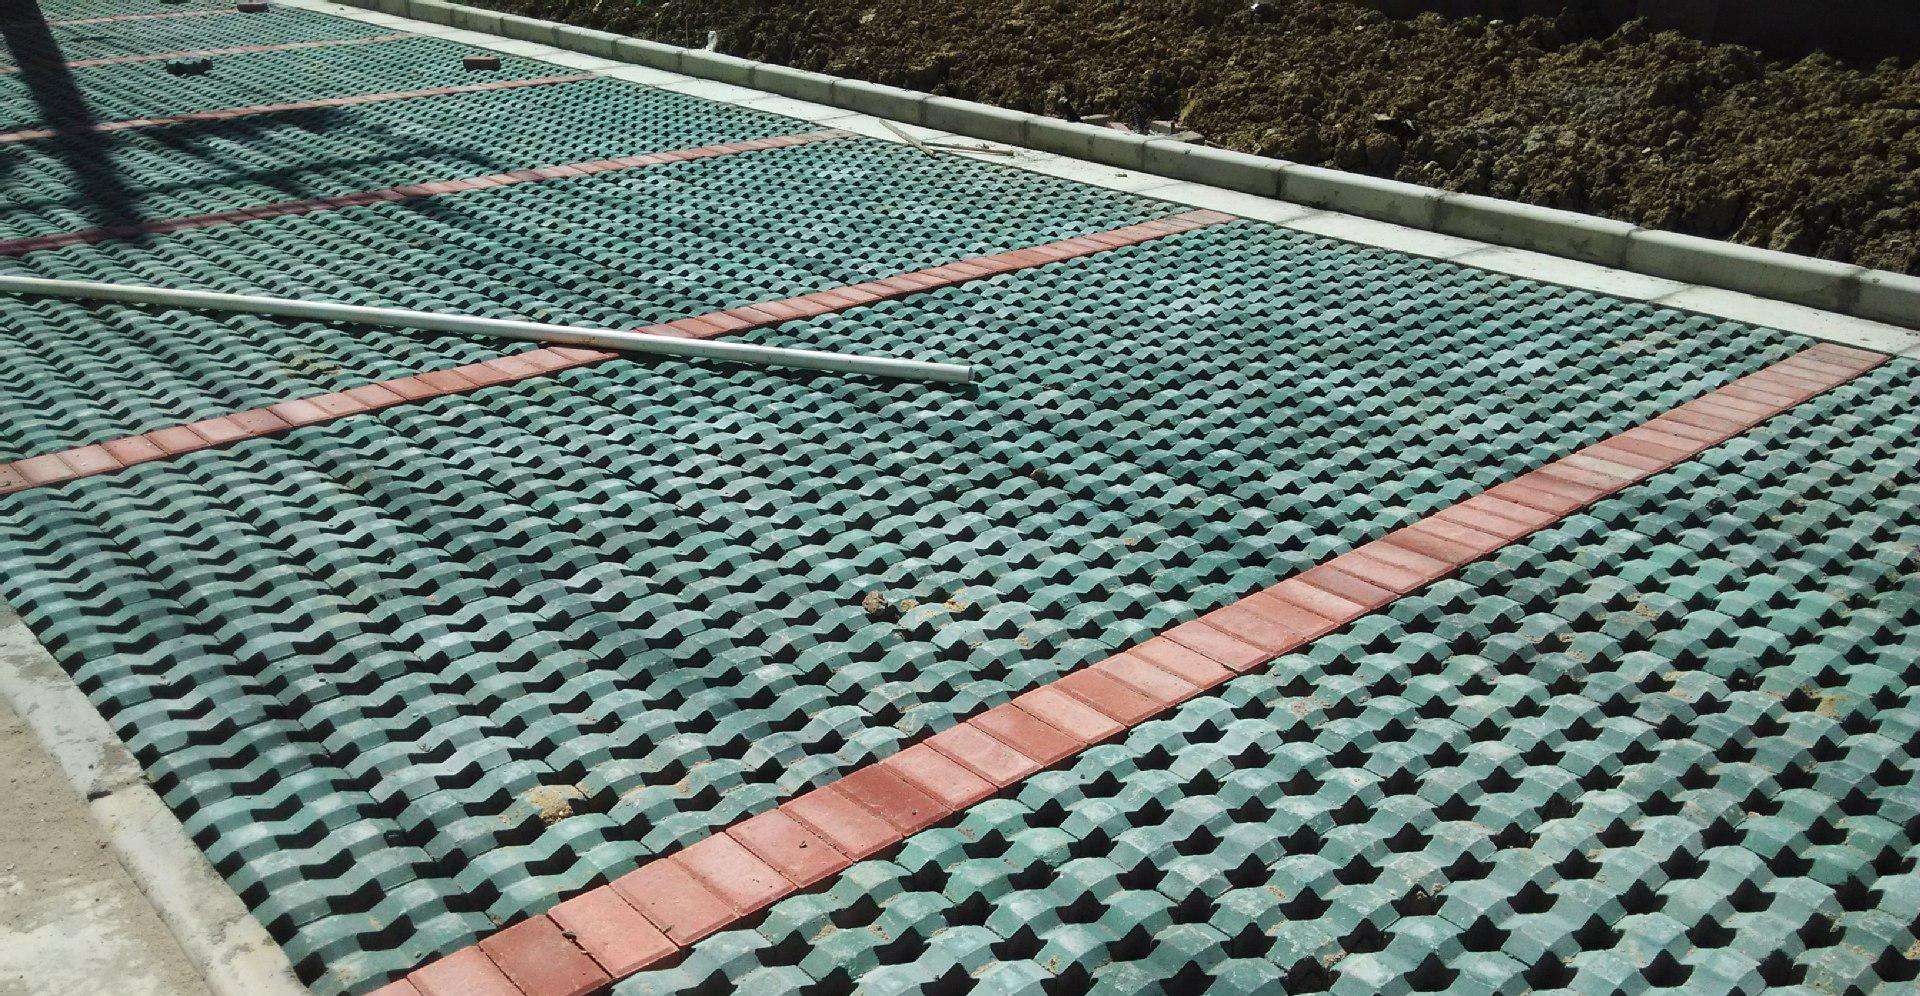 吉林草坪砖_吉林市彩色砖、瓦及砌块定制-吉林市吉林经济技术开发区宏鑫水泥制品厂